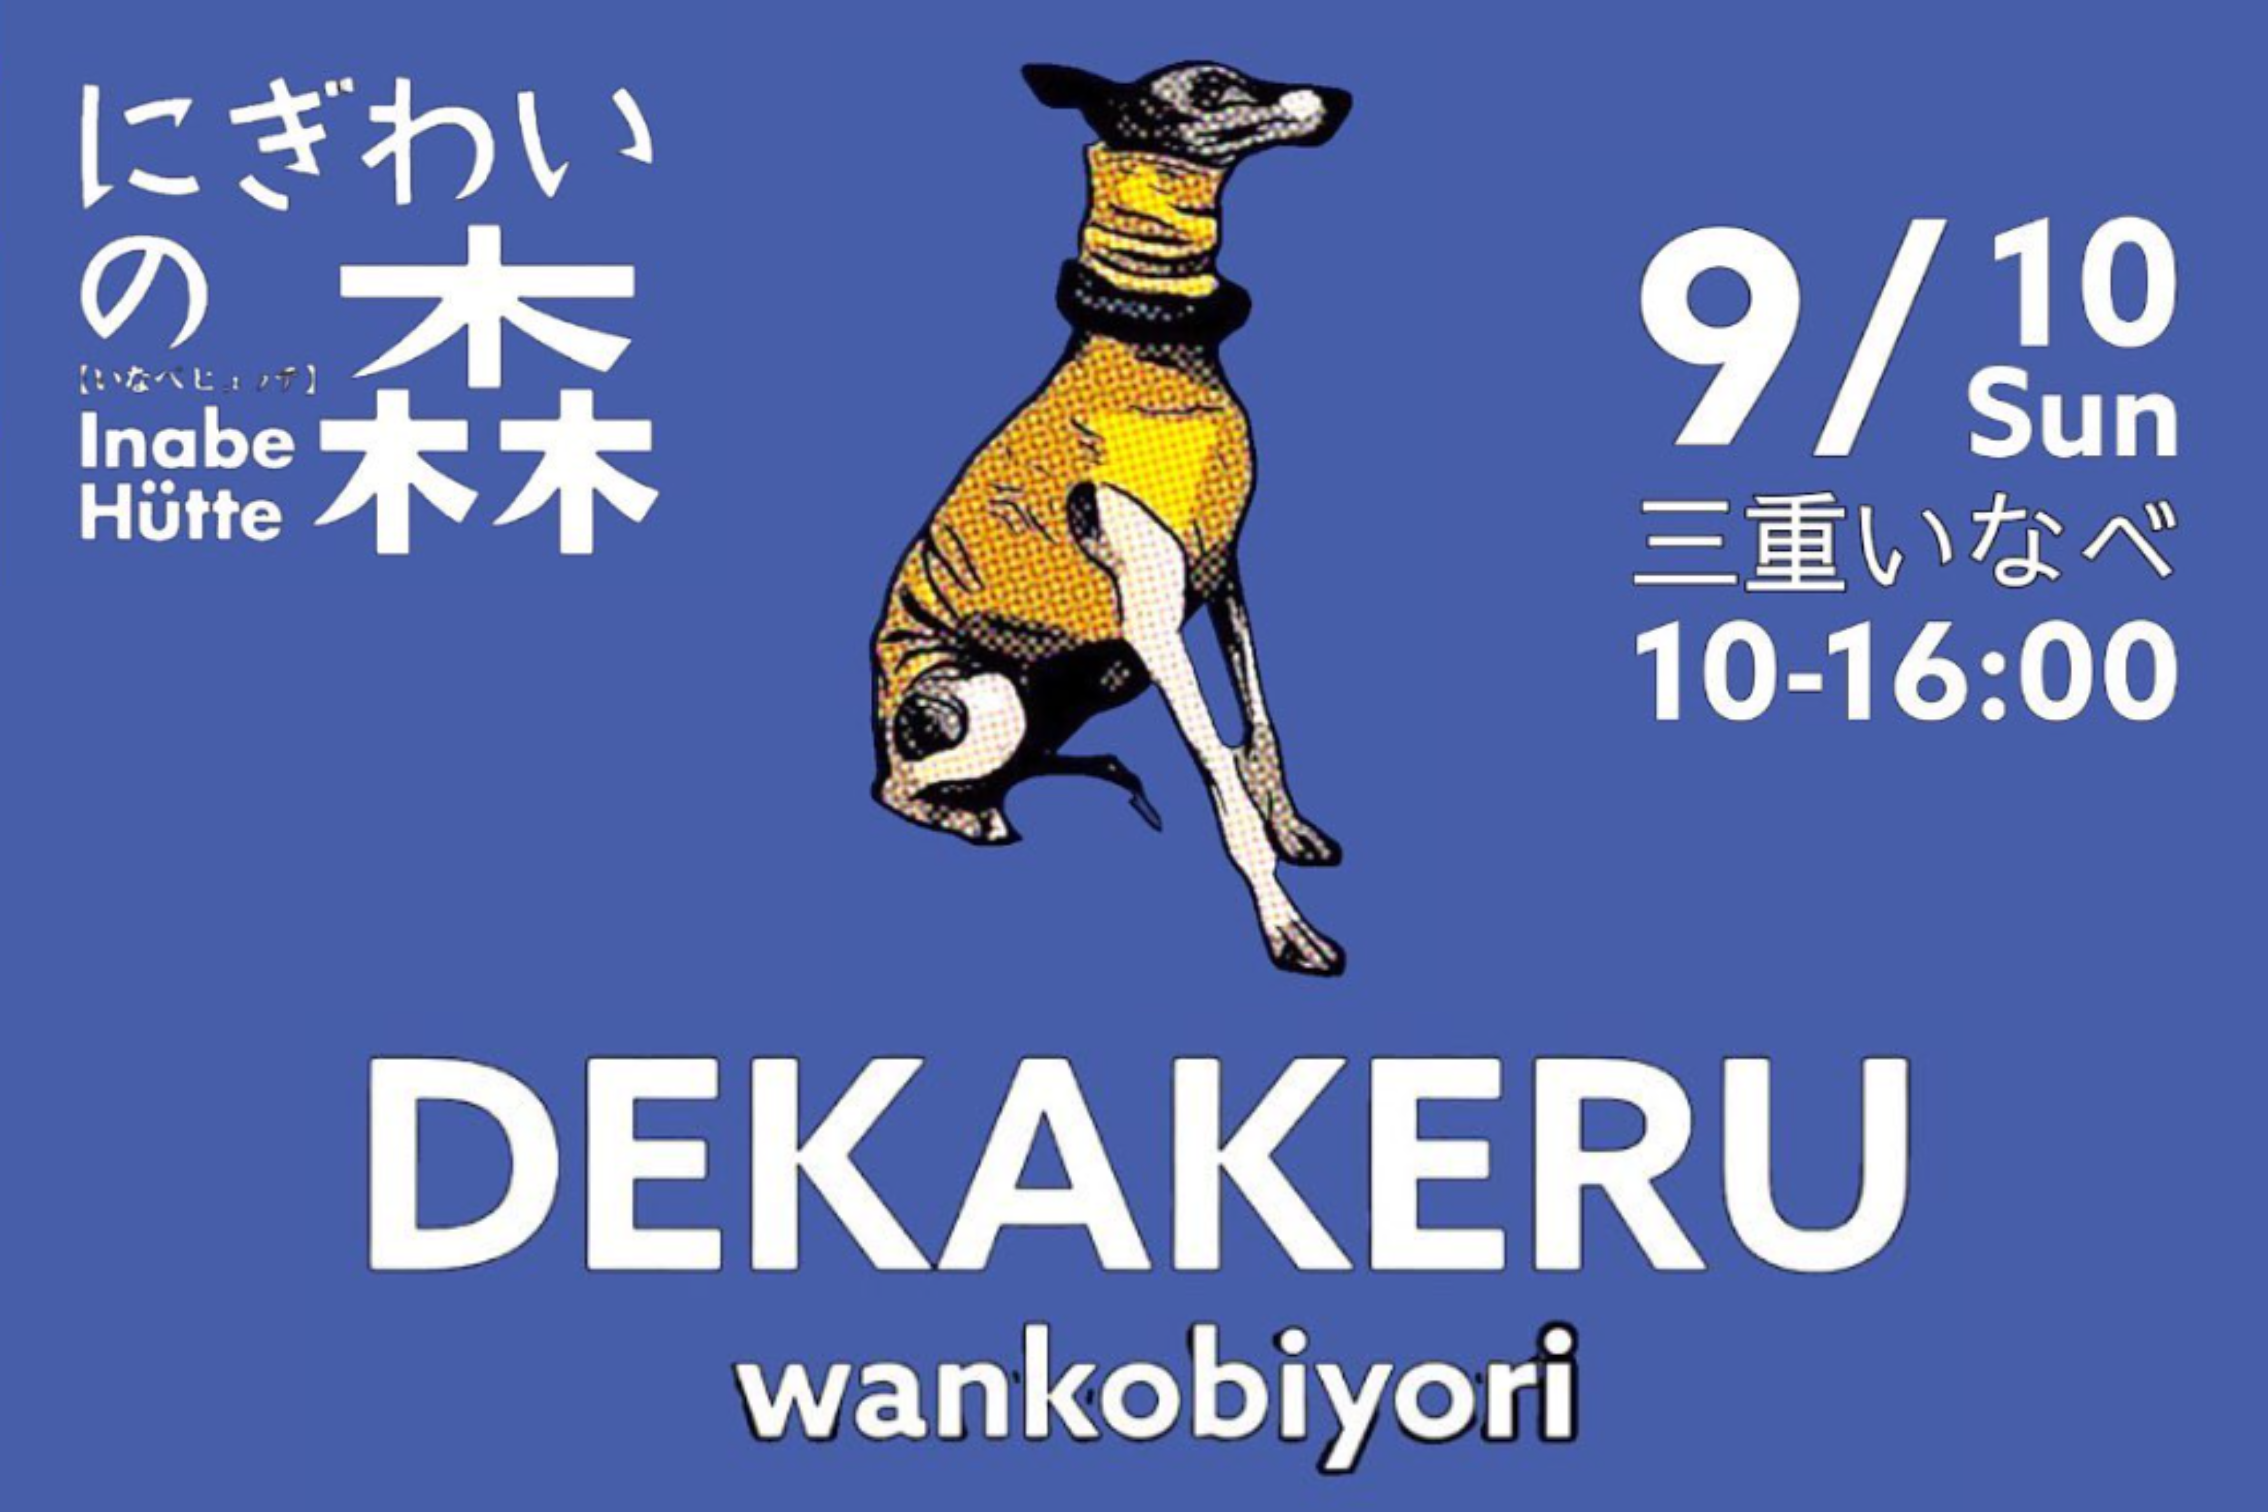 【三重県】にぎわいの森 DEKAKERU wankobiyori